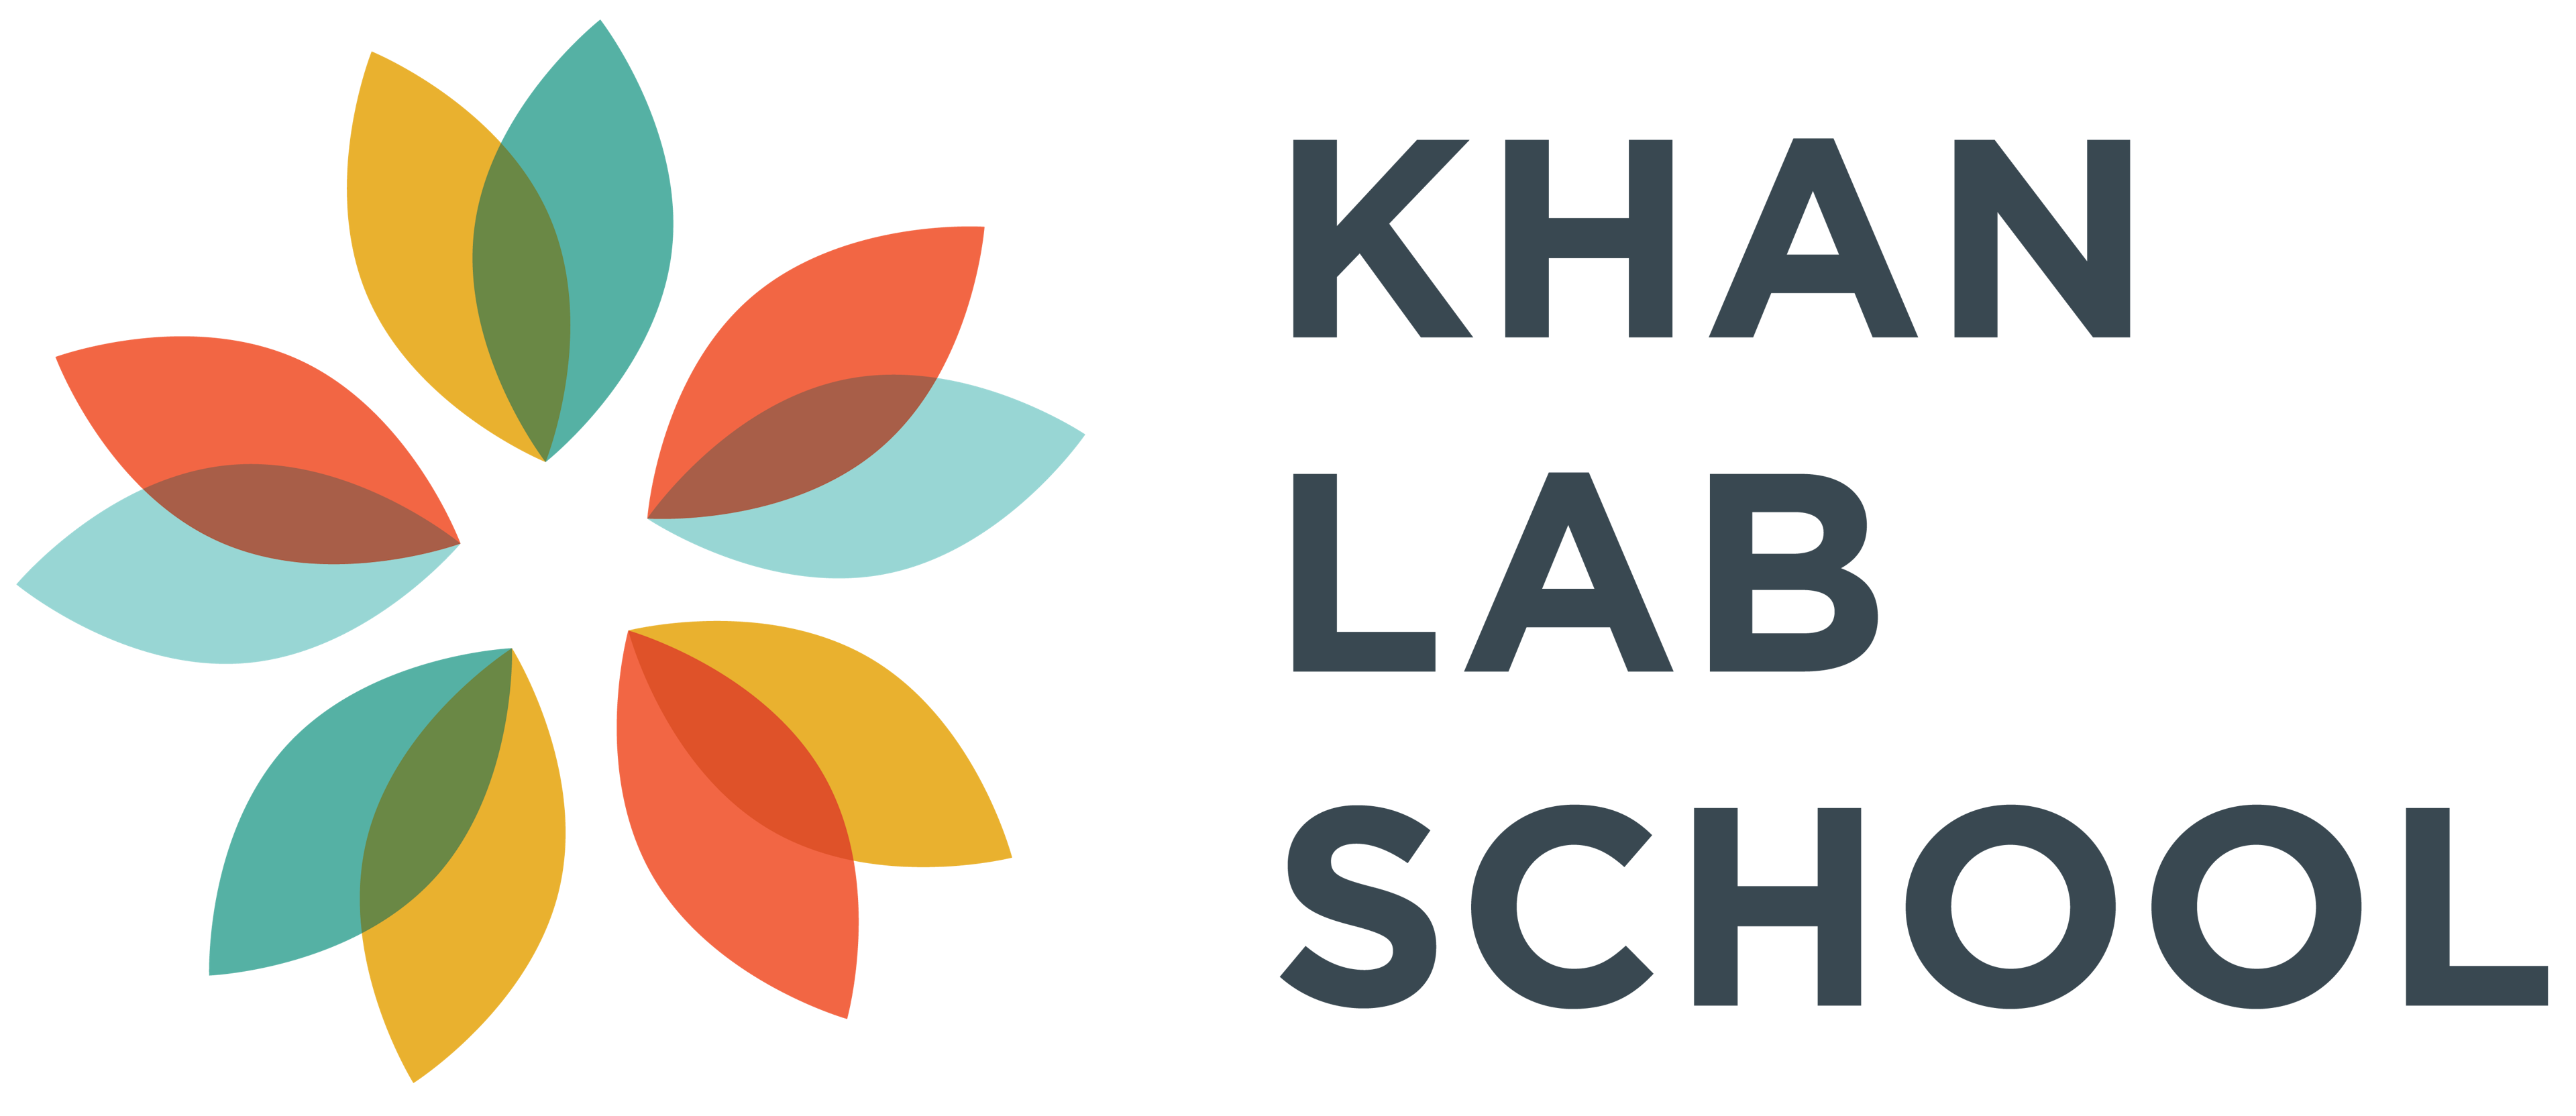 KLS Logo